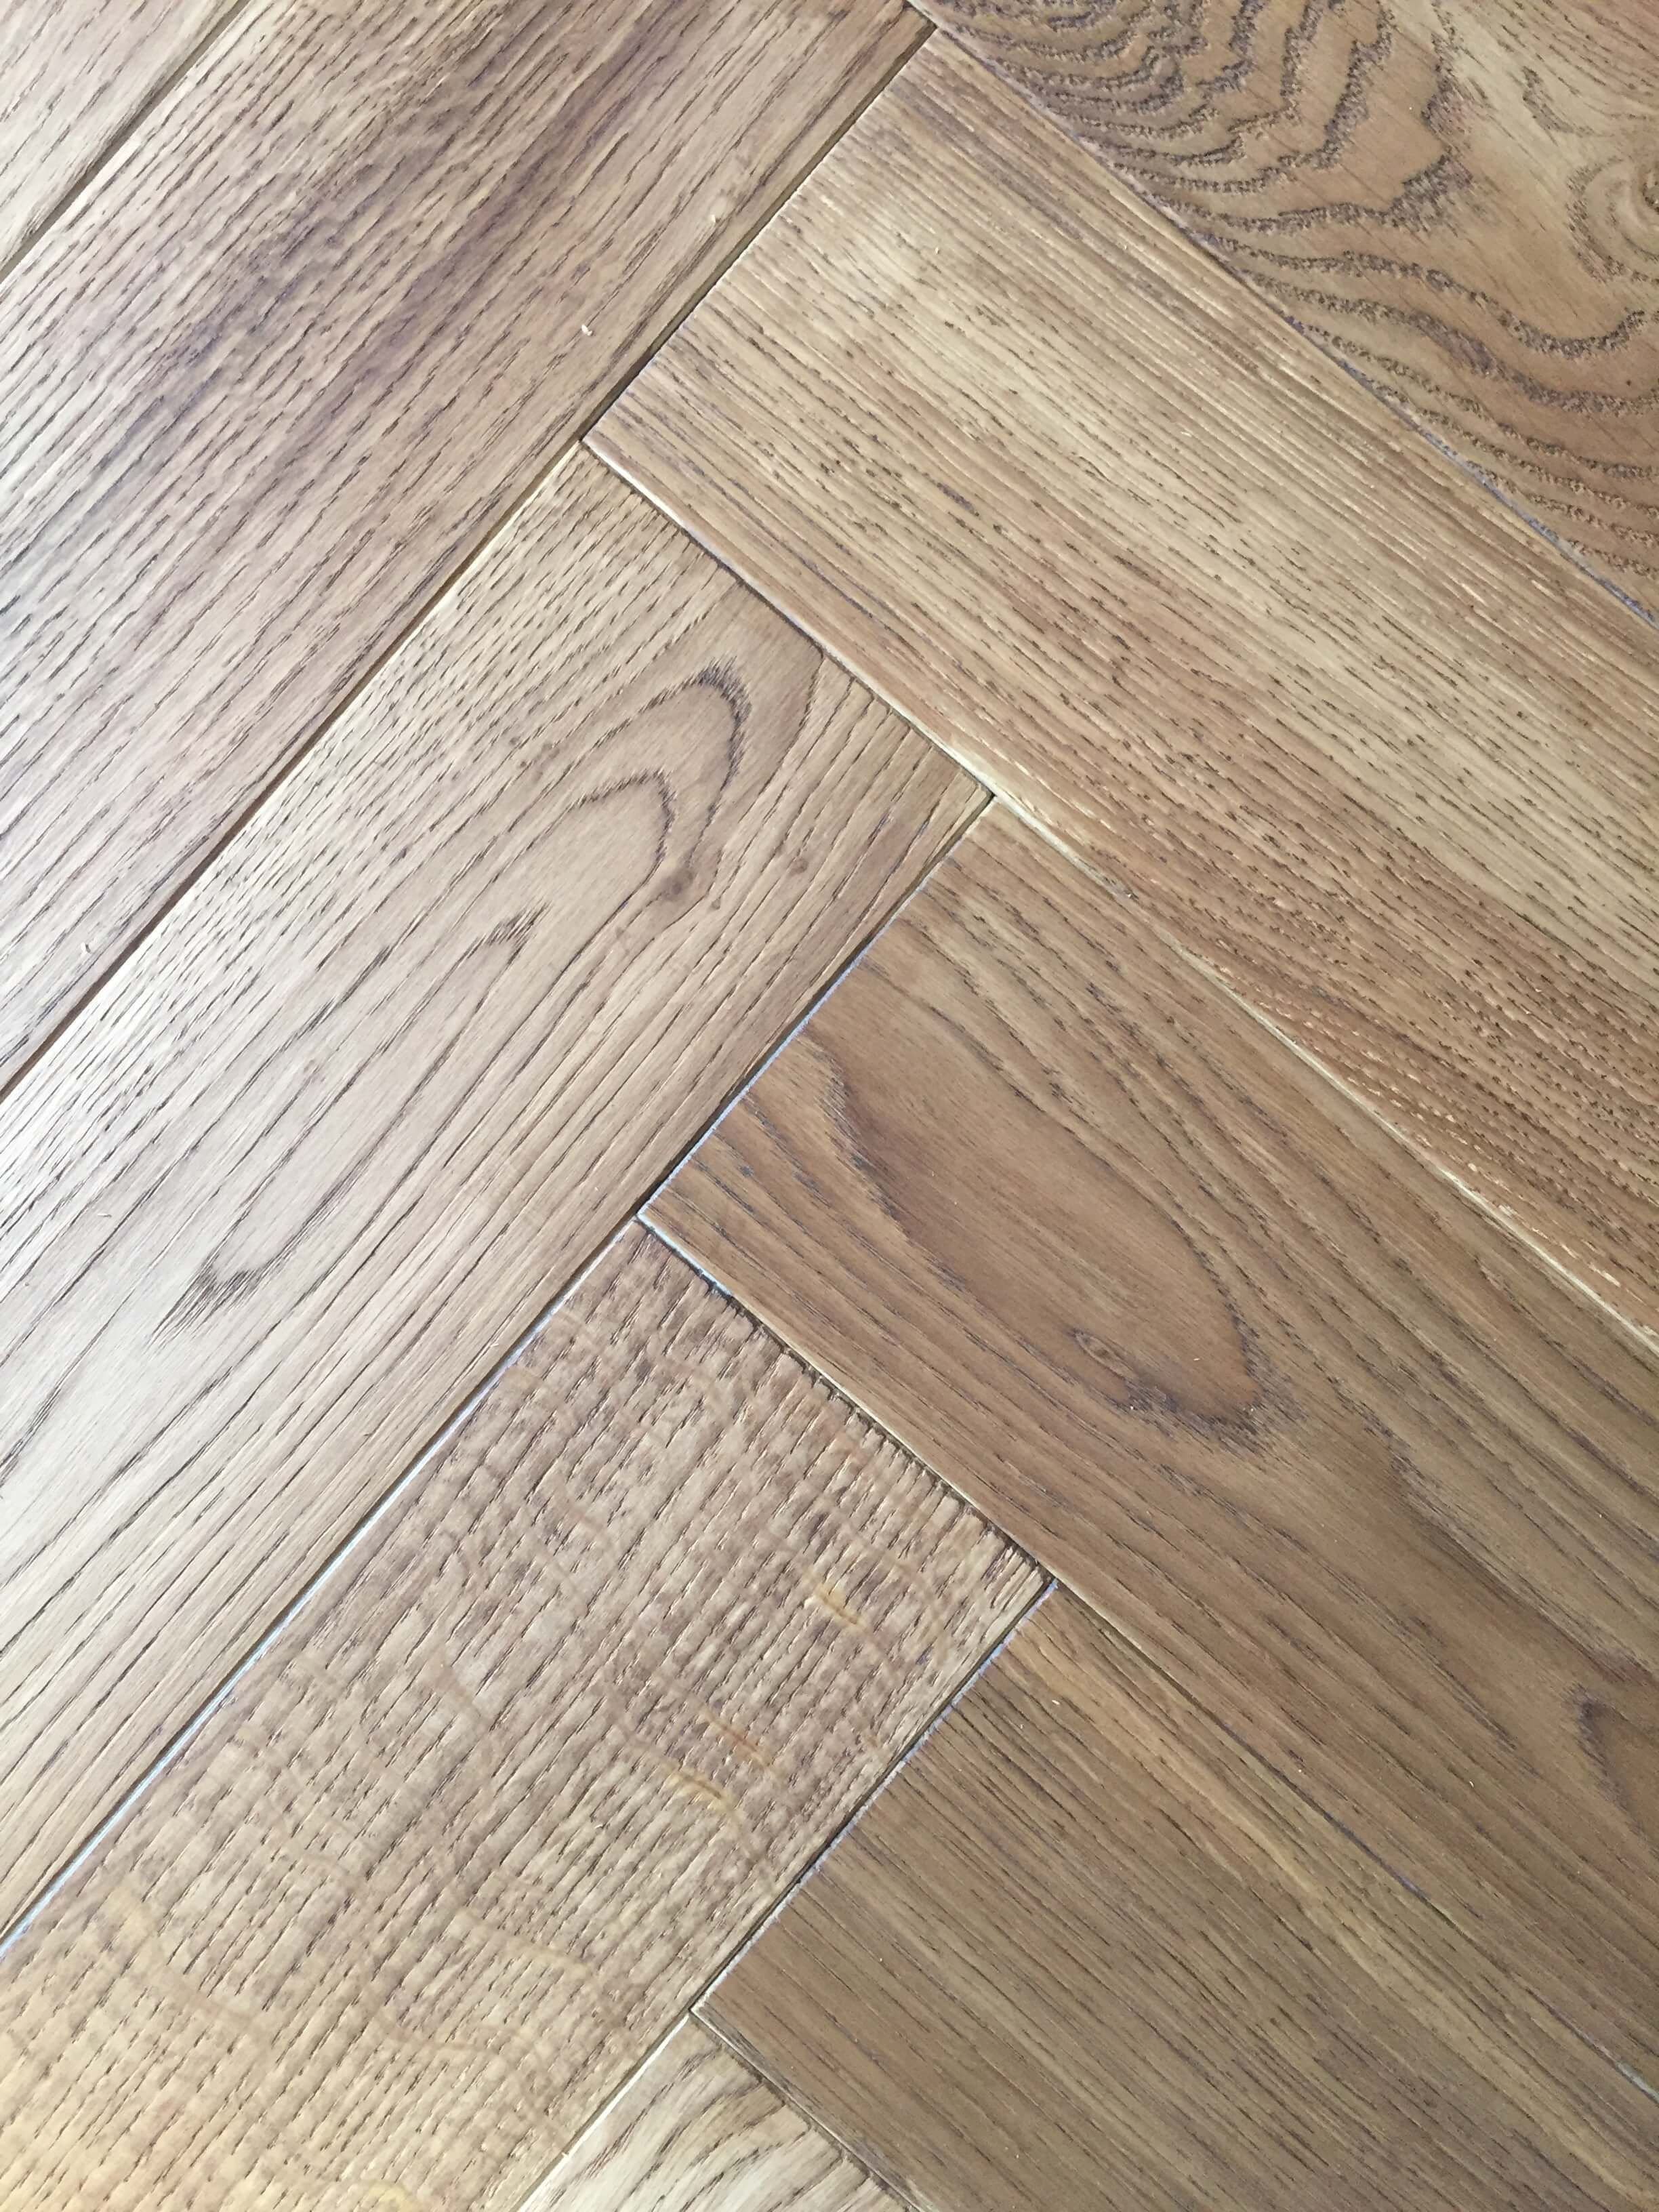 28 Elegant Old Hardwood Floor Ideas 2024 free download old hardwood floor ideas of laying laminate flooring krono original antique elm laminate regarding 40 light oak engineered hardwood flooring ideas